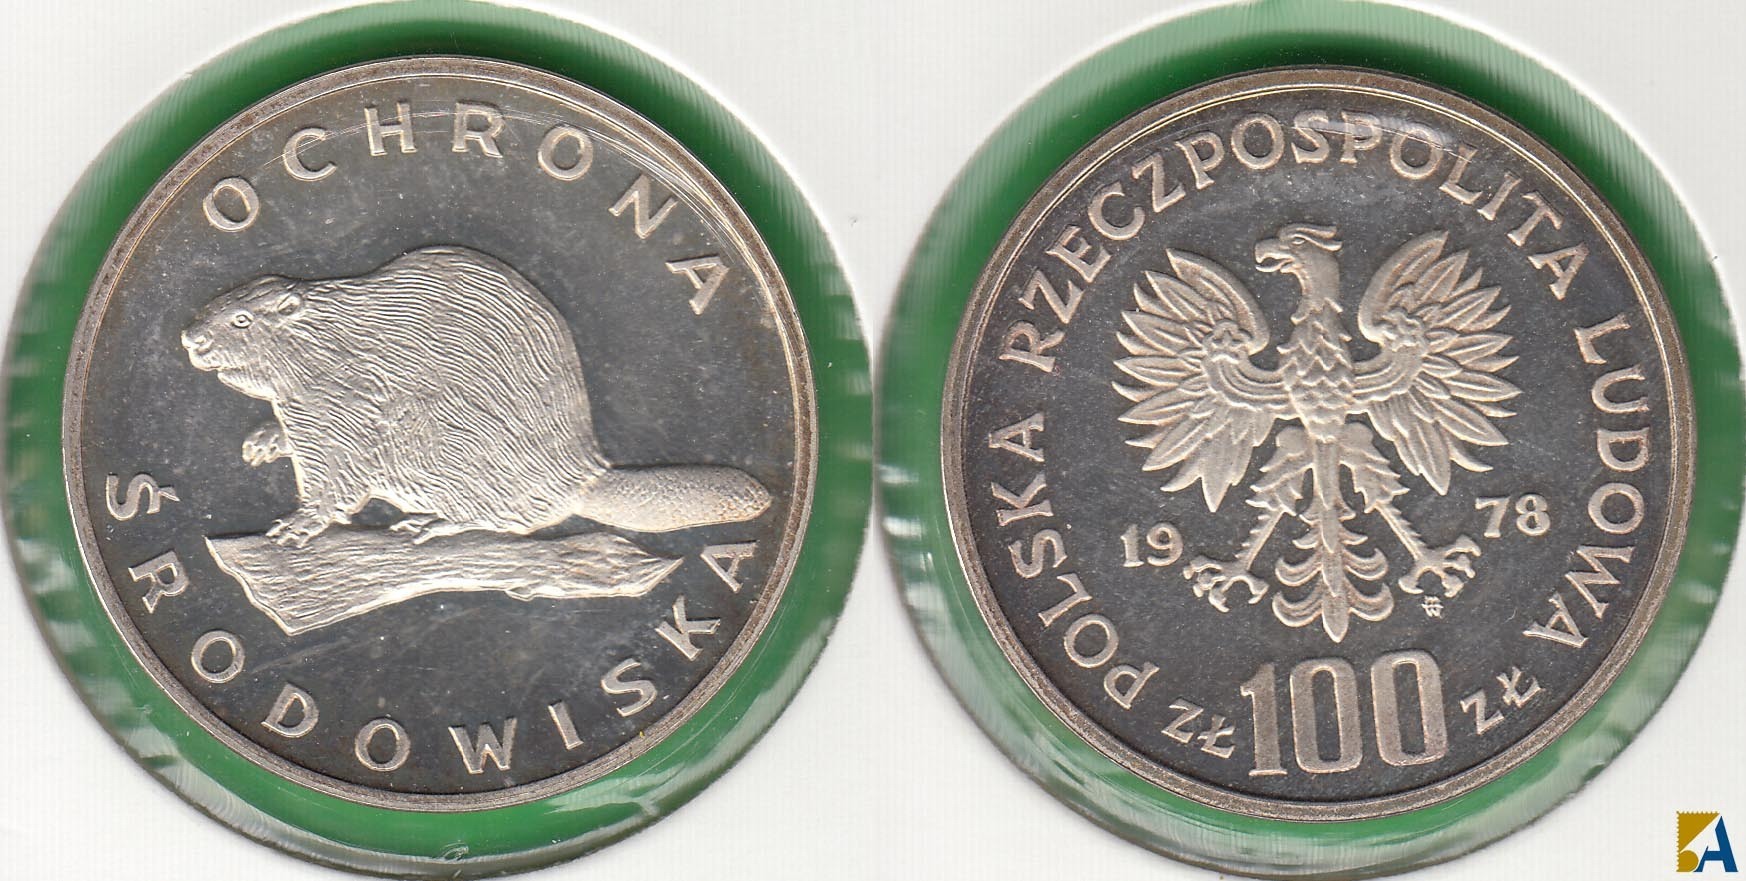 POLONIA - POLSKA. 100 ZLOTYCH DE 1978. PLATA 0.625. (4)